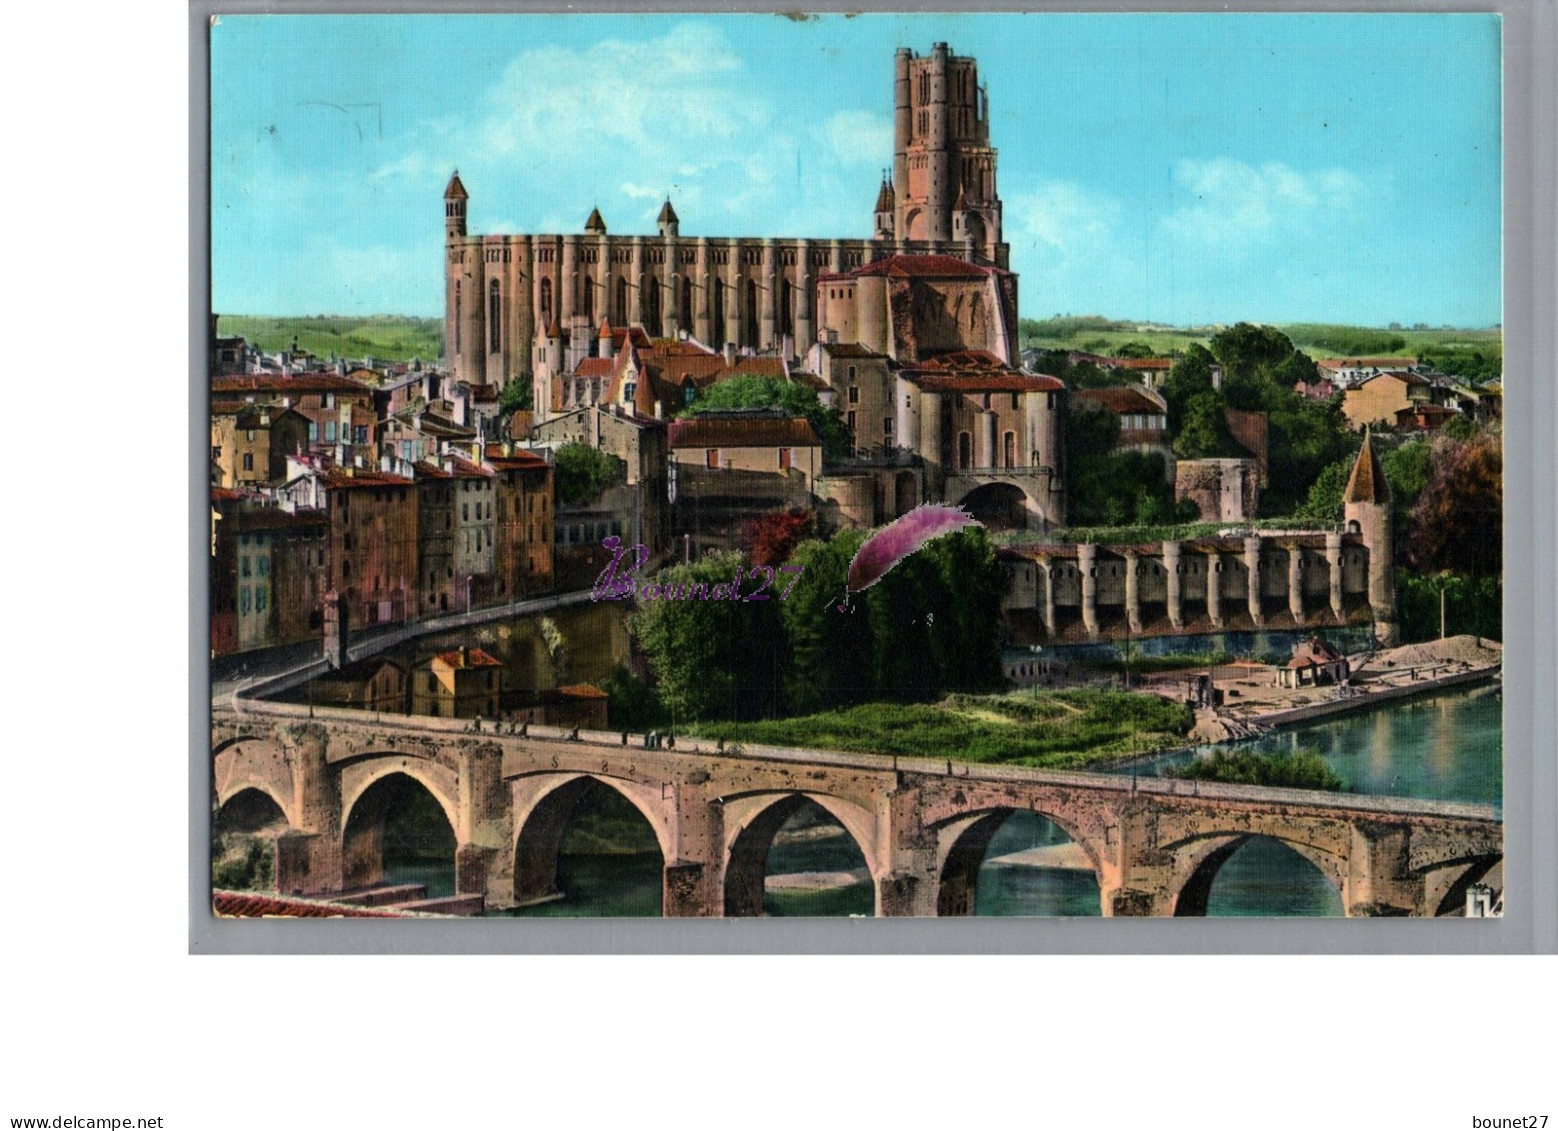 ALBI 81 - Le Pont Vieux Palais Archiepiscopal De La Berbie Jardin Terrasse Et Donjon Basilique Sainte Cecile - Albi